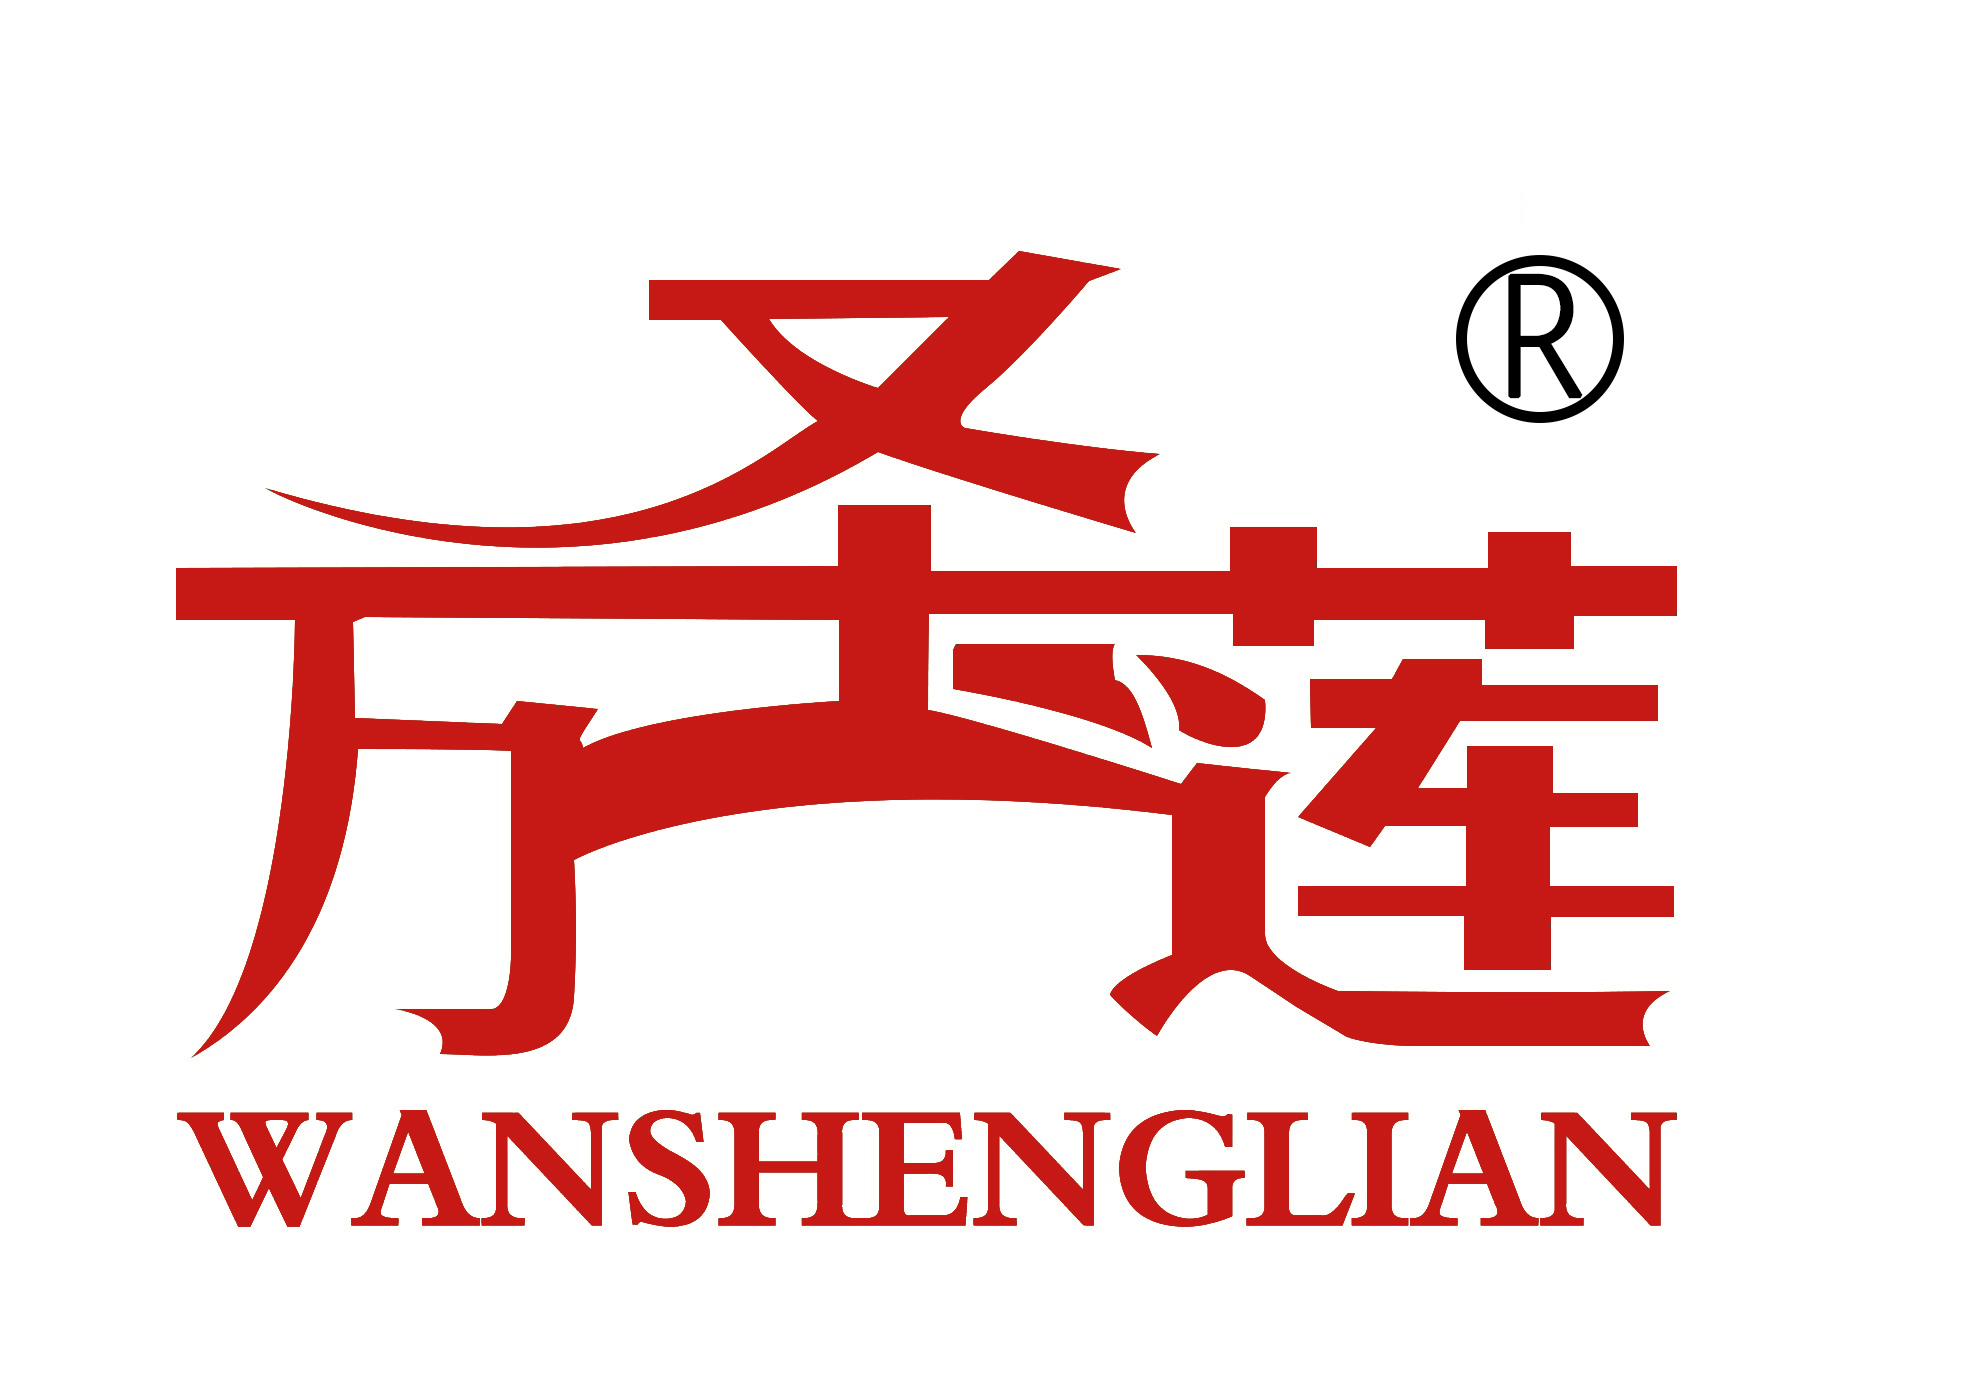 Gaoyang County wanshenglian Textile Co.Ltd